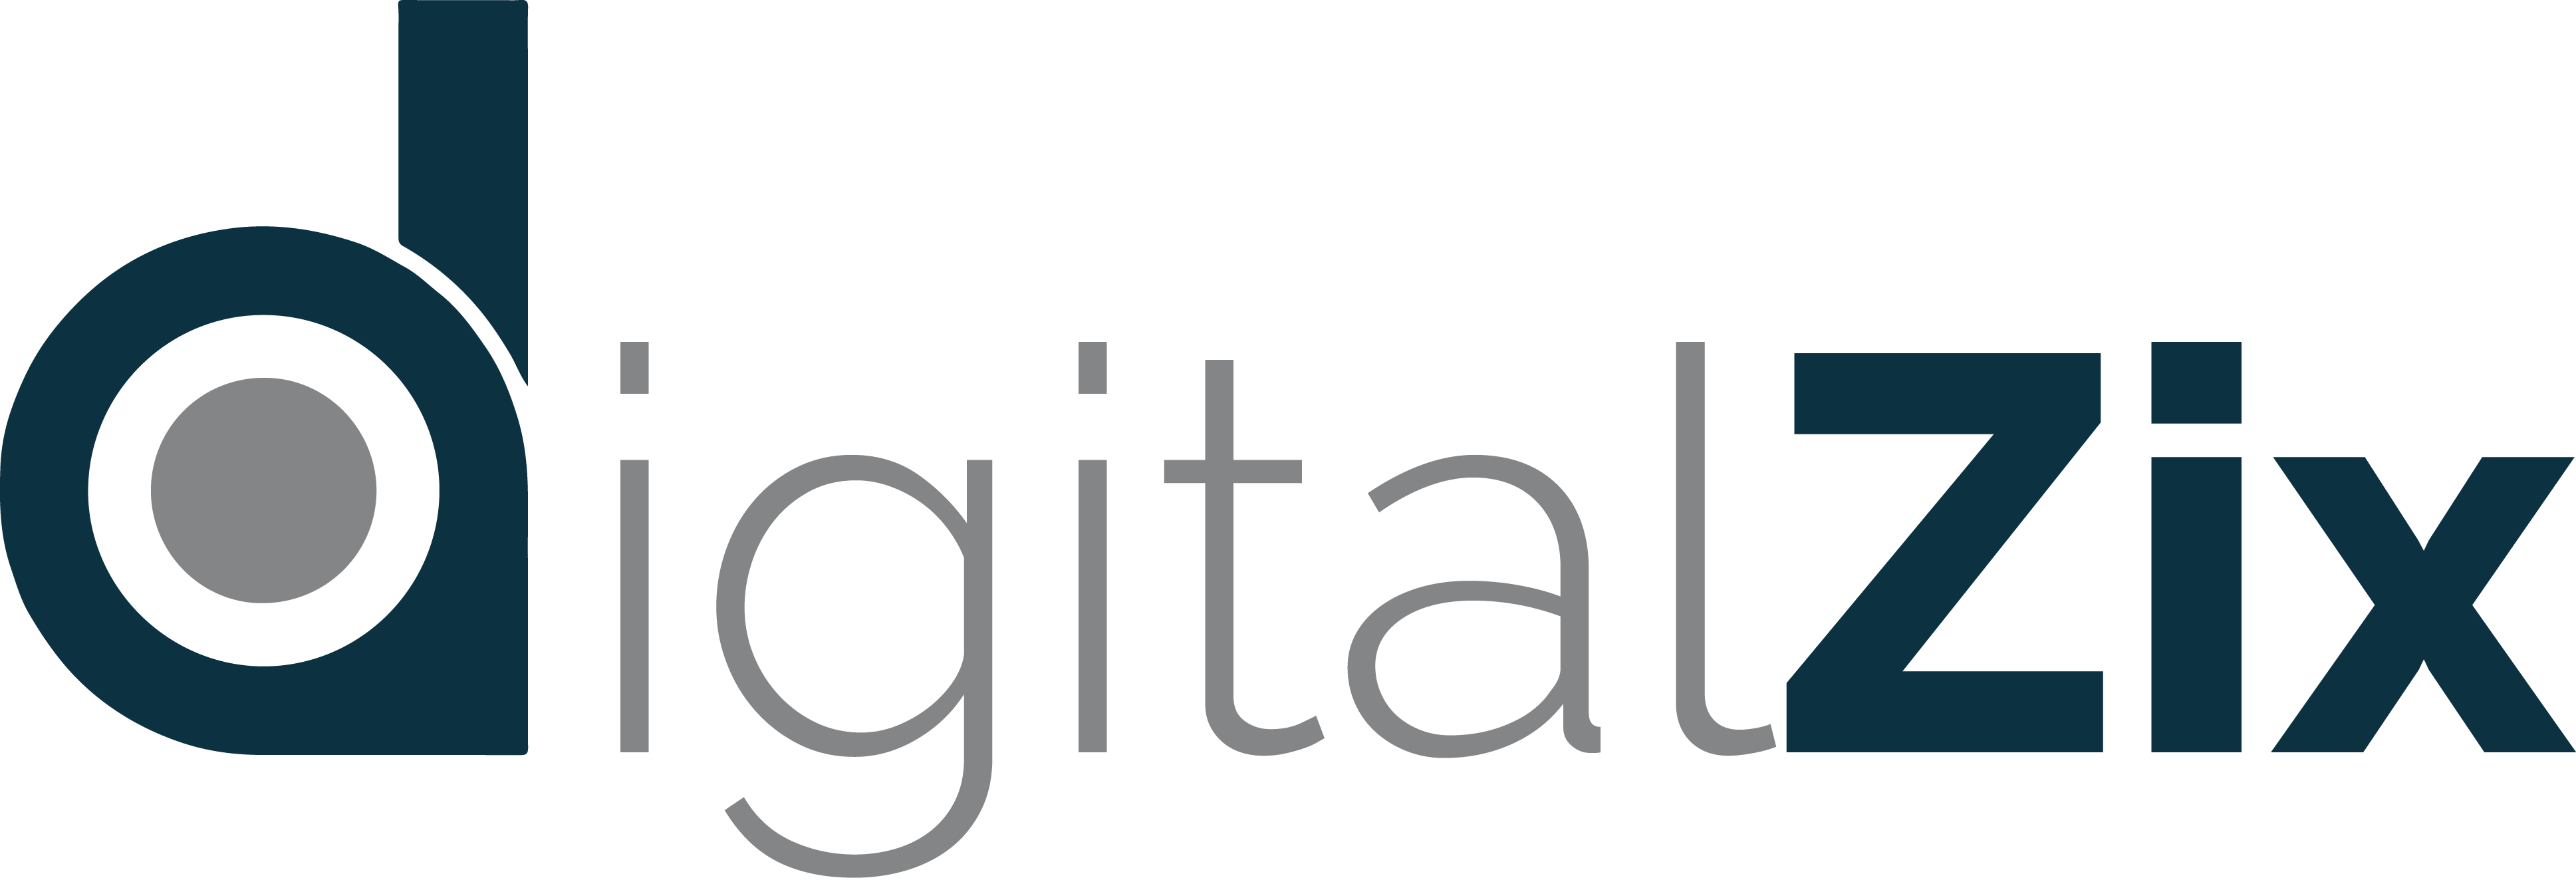 DigitalZix Private Limited